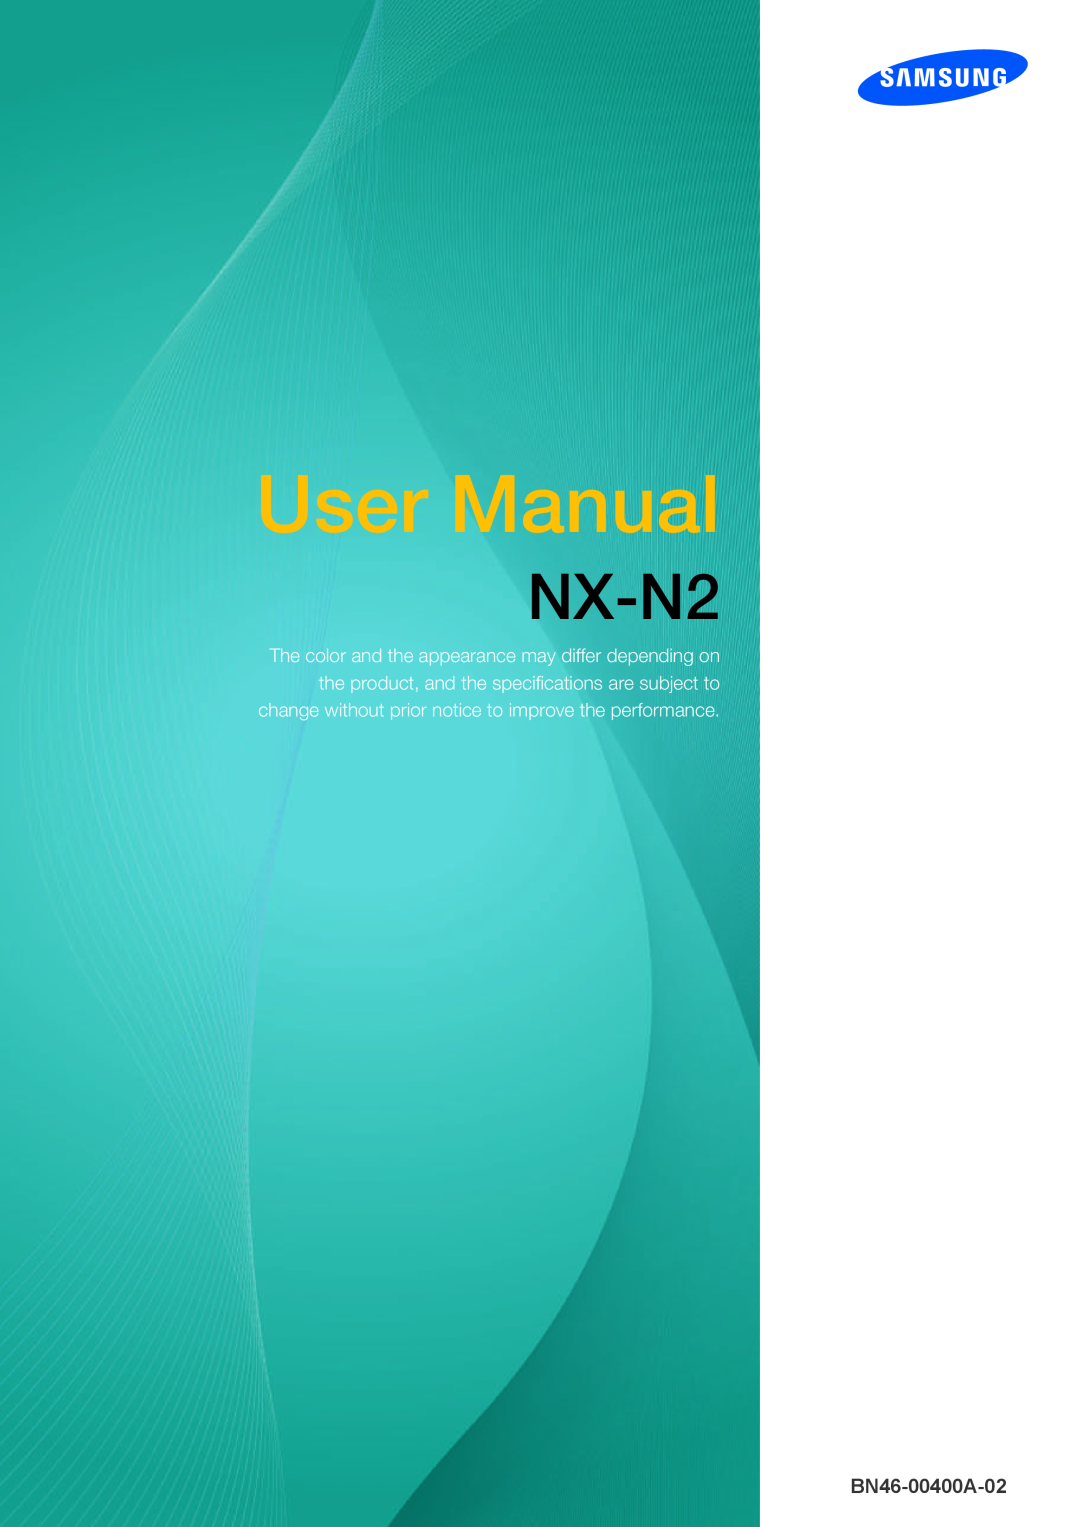 Samsung LF00FNXPFBZXEN manual Uživatelská příručka, NX-N2, BN46-00400A-05 